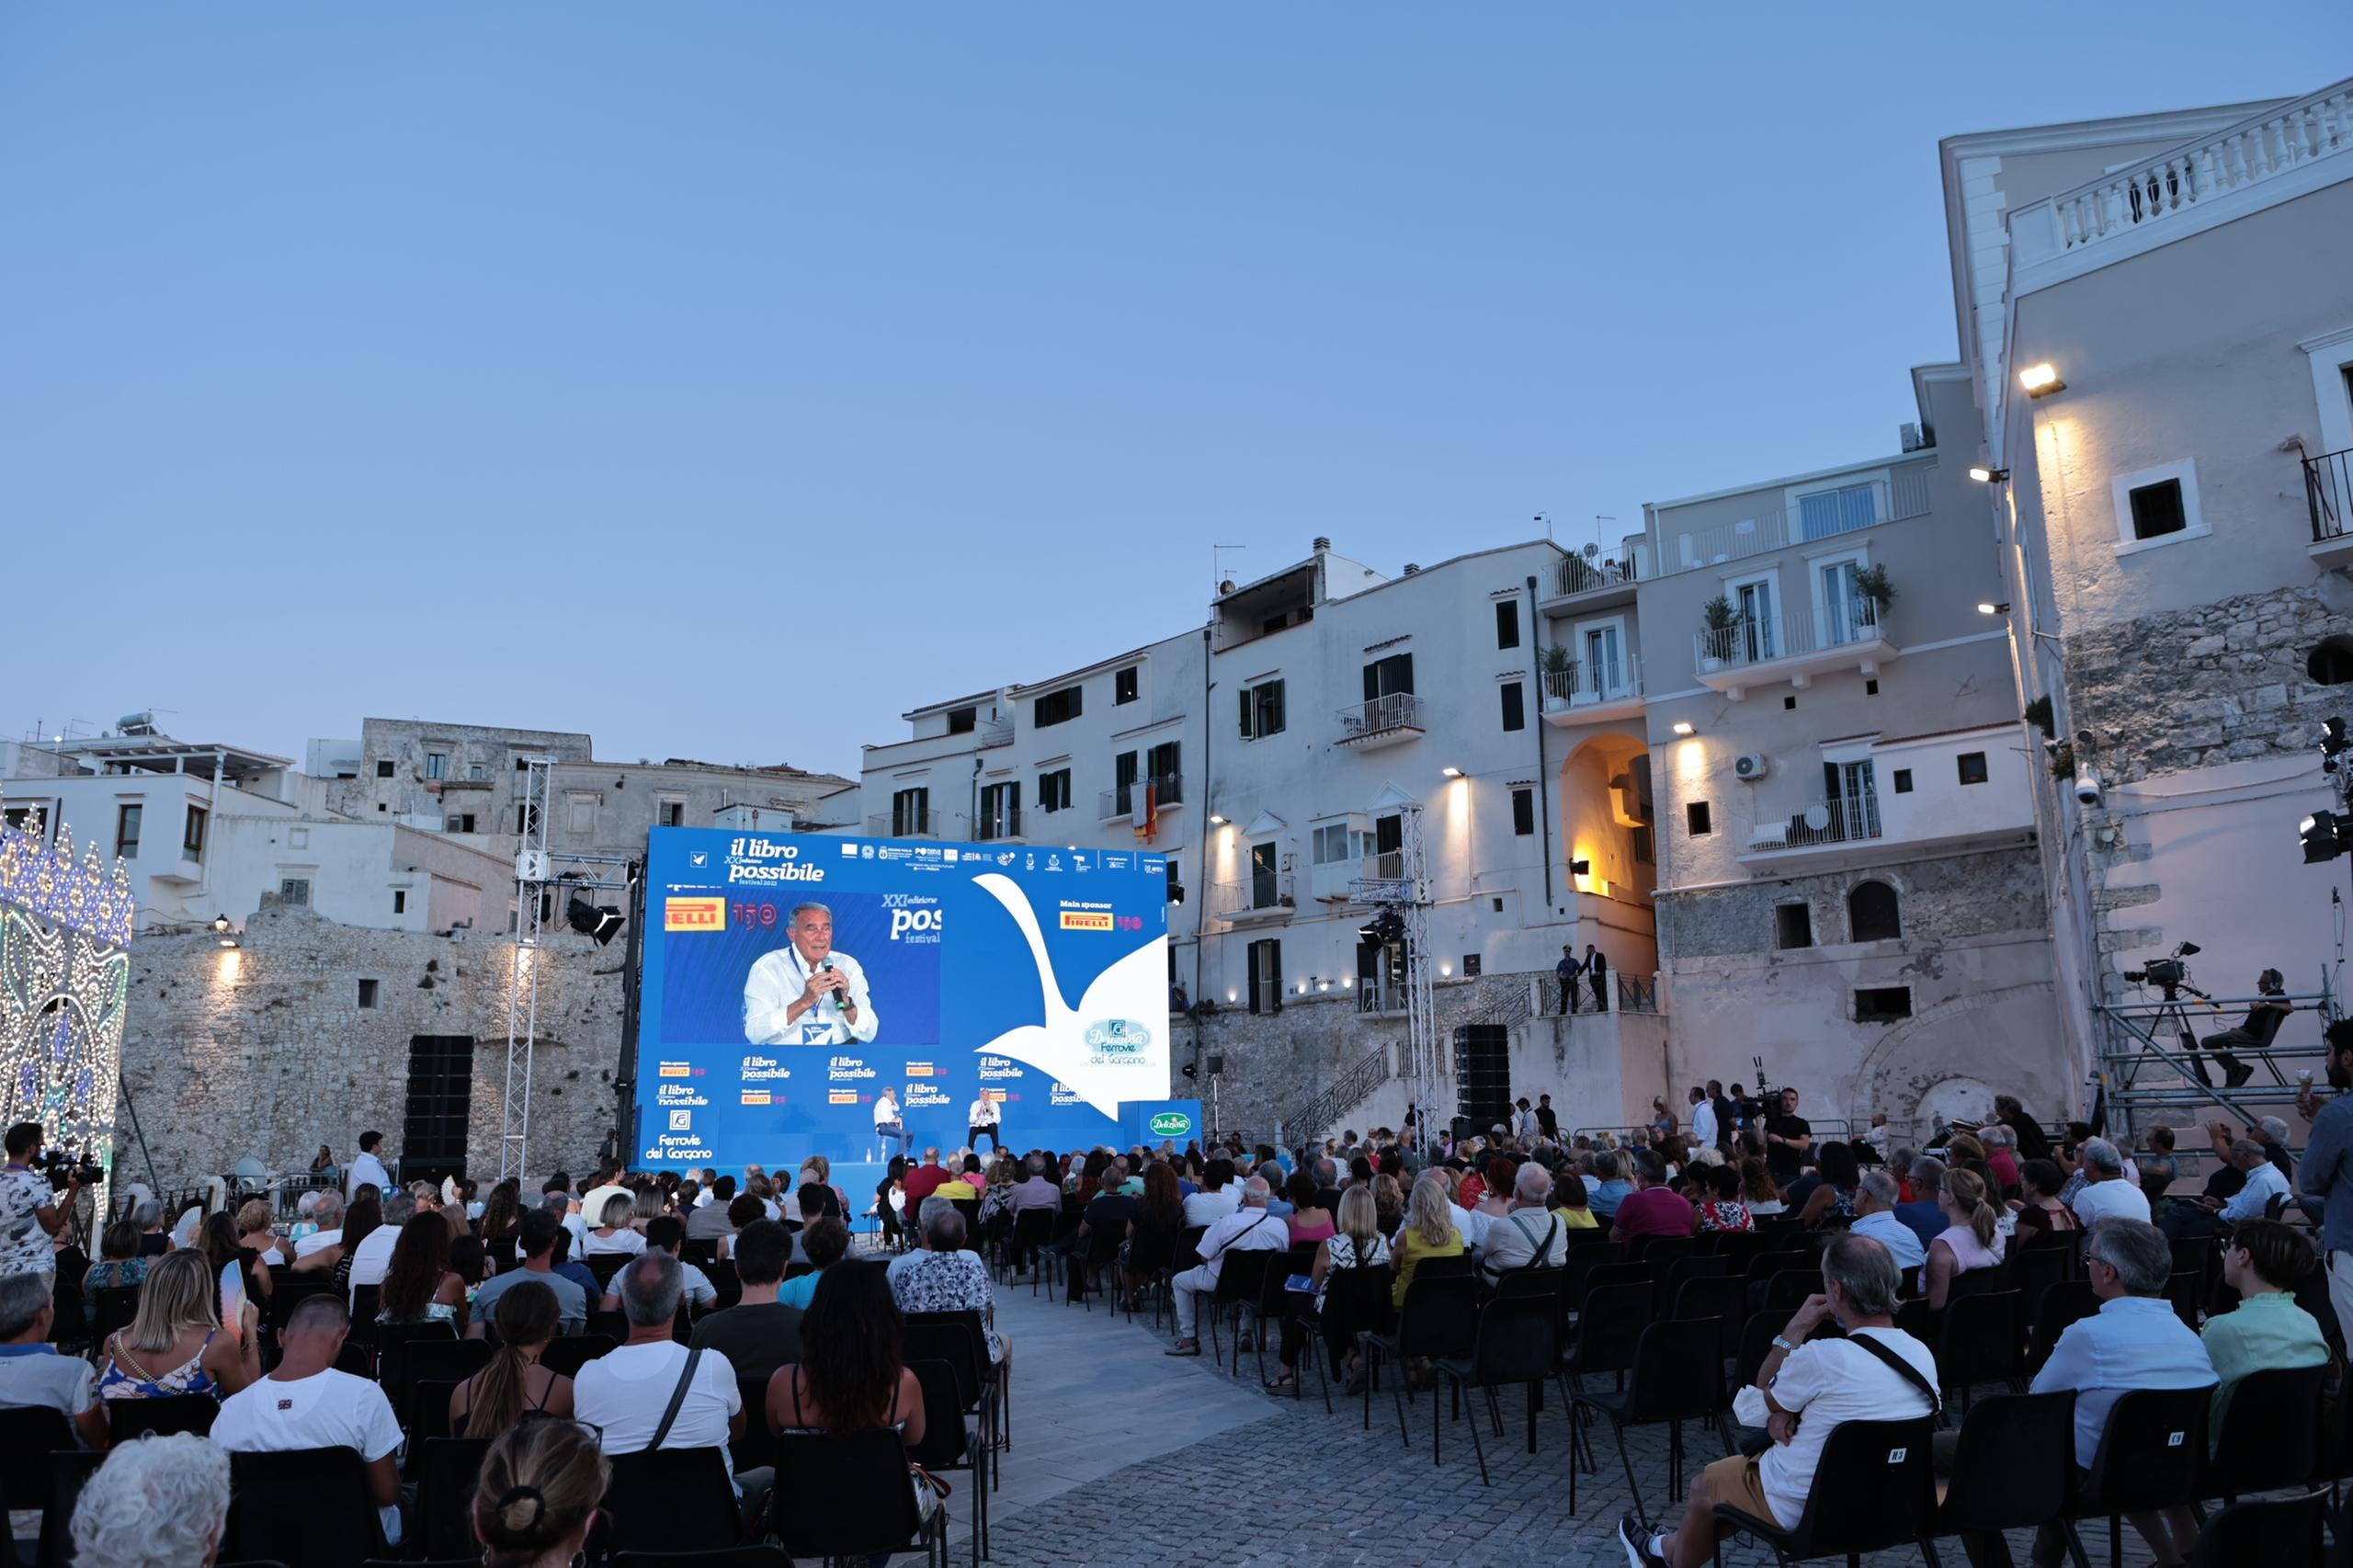 Torna “Il Libro Possibile”: oltre 250 ospiti al festival culturale dell’estate italiana